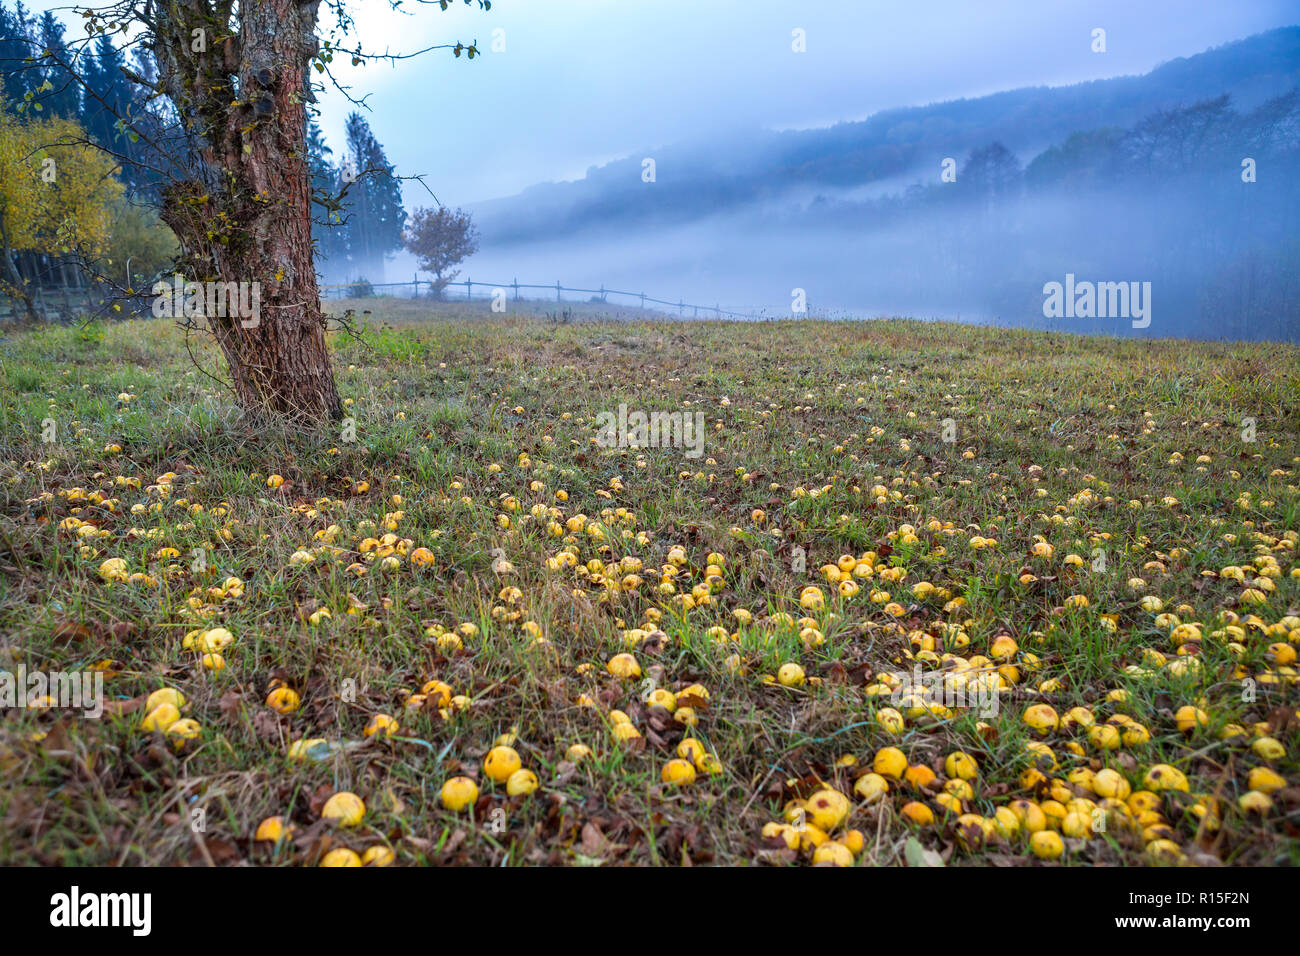 Albero di mele e di erba campo coperto con mele su di una collina che si affaccia sul brumoso paesaggio autunnale, Ulmen, West Eifel campo vulcanico, Renania, Germania Foto Stock